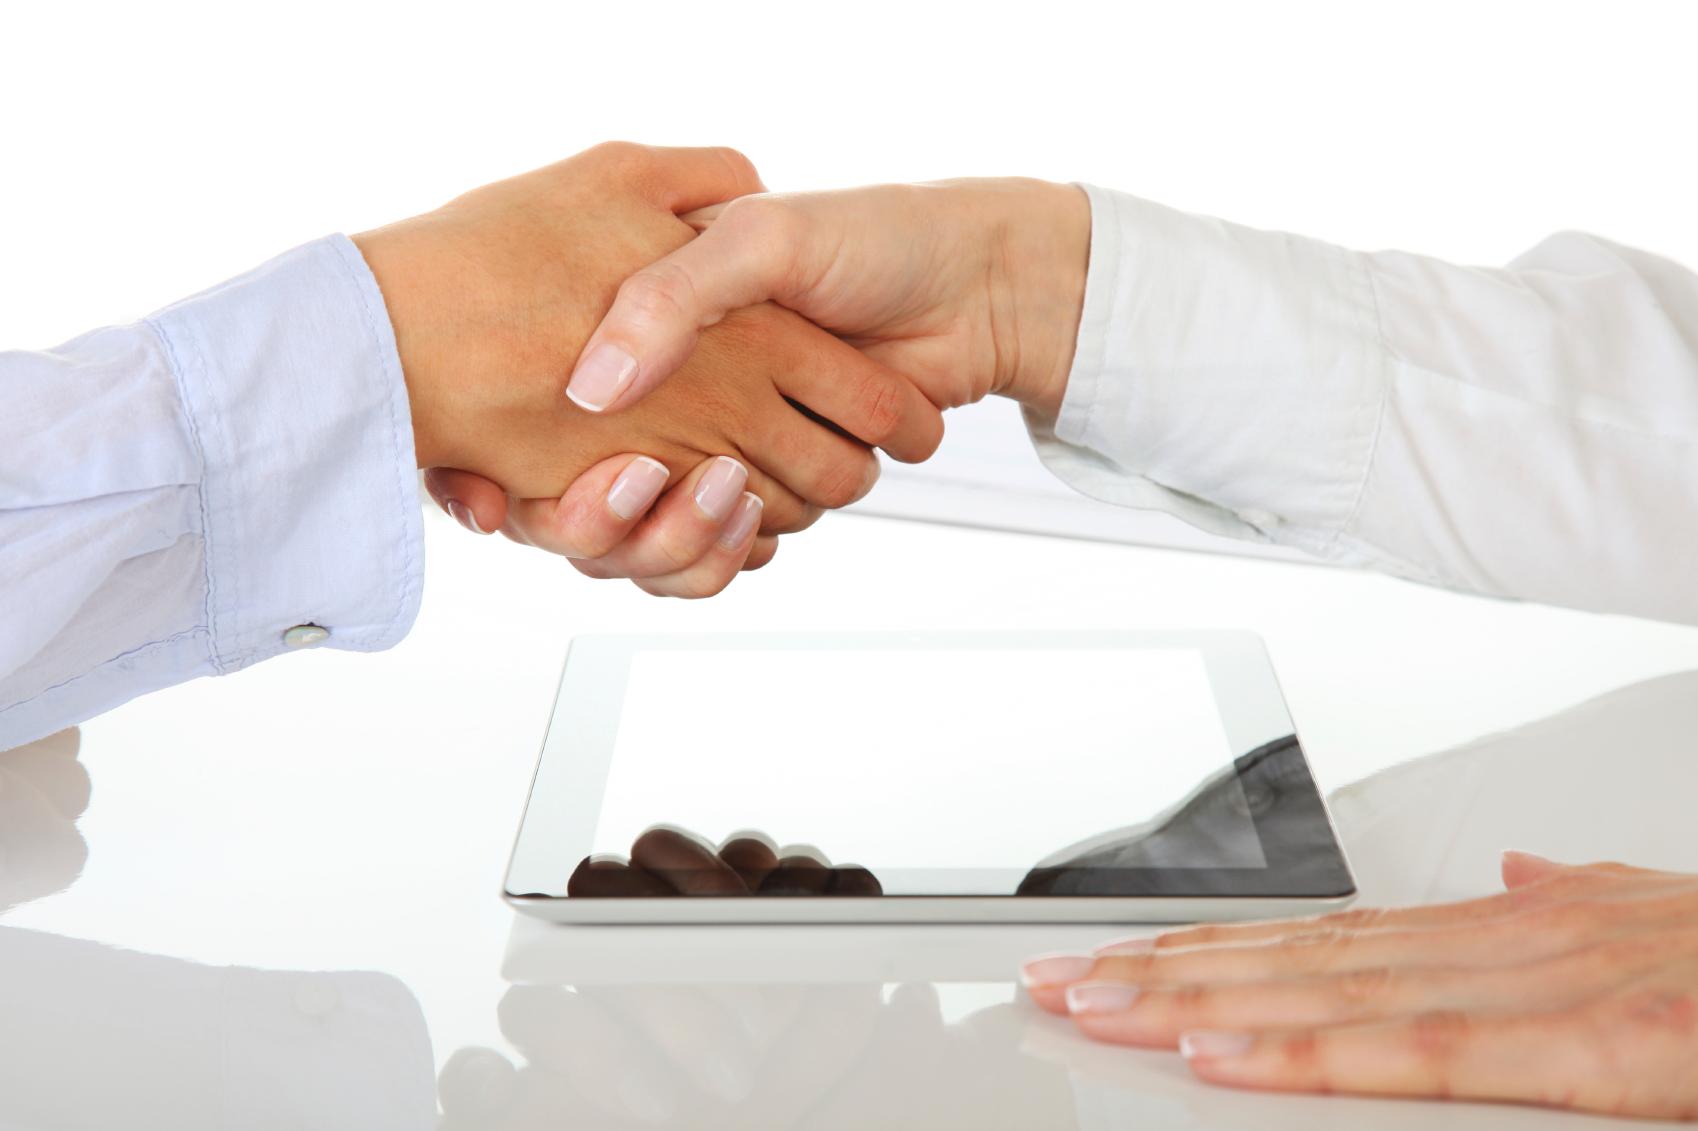 Zwei Personen geben sich über einem Tablet-PC auf einem weißen Tisch die Hand und symbolisieren damit eine Vereinbarung über den Kauf einer Immobilie in Italien